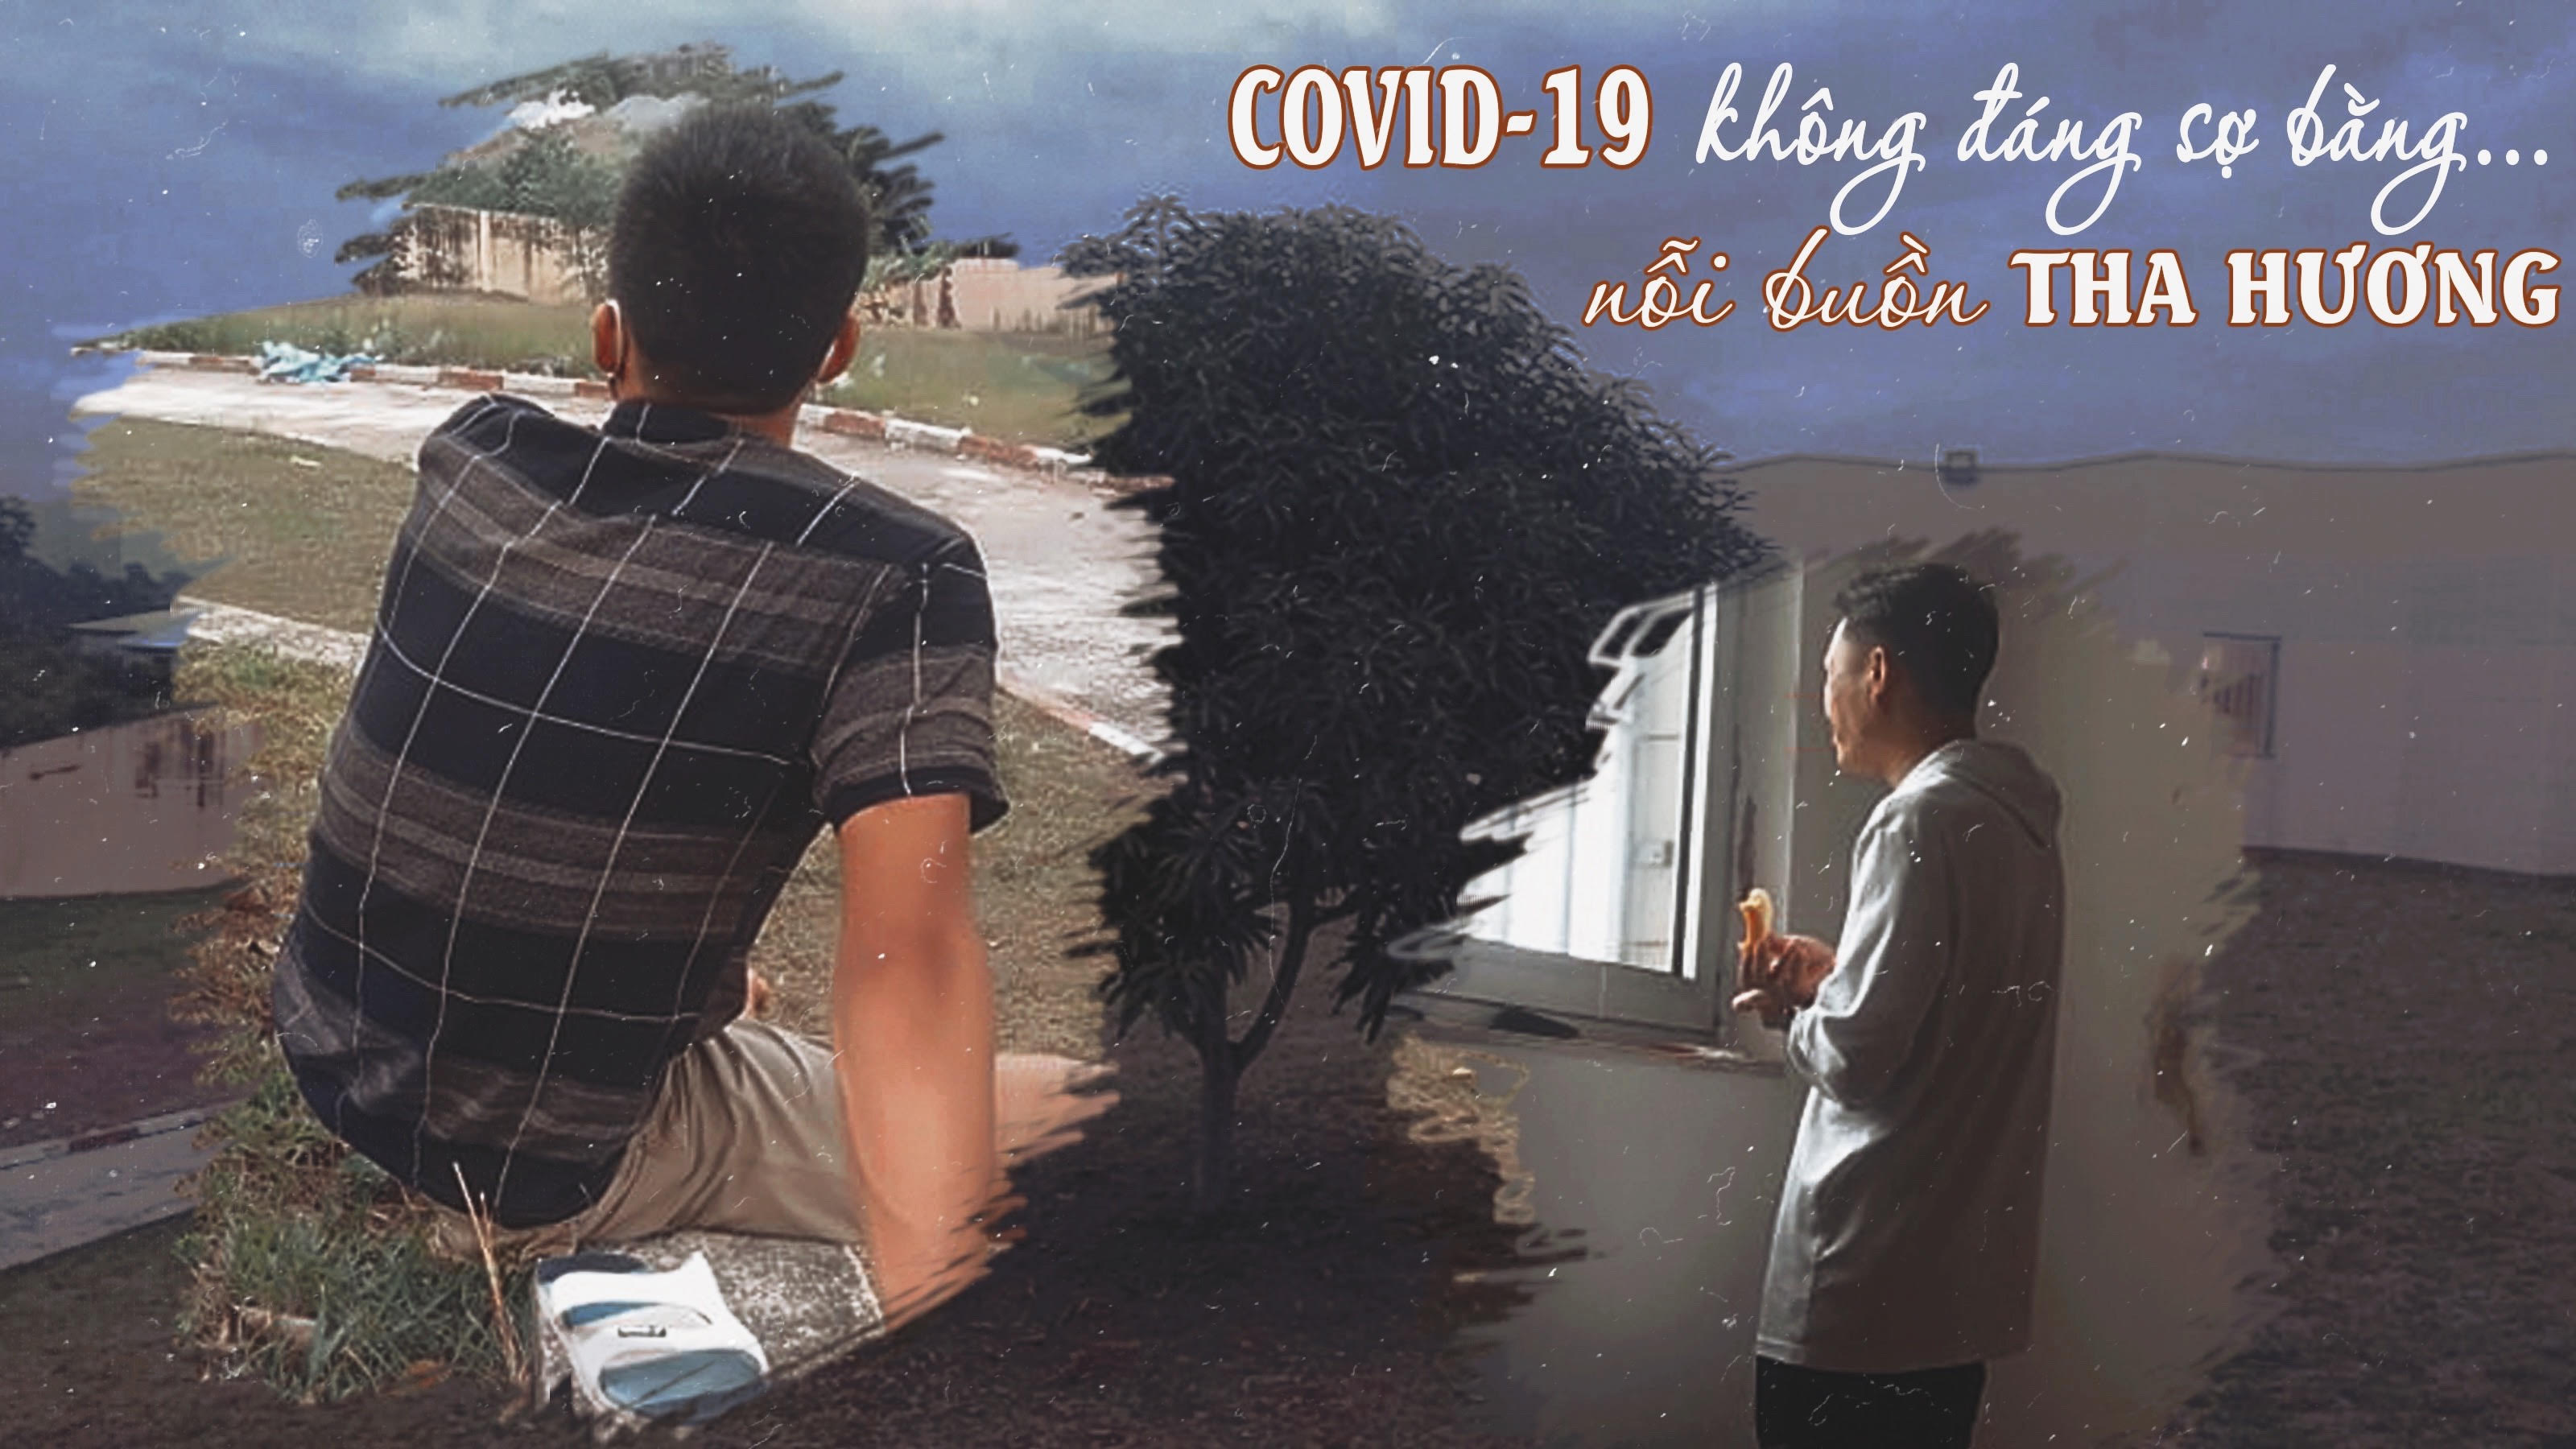 COVID-19 không đáng sợ bằng nỗi buồn tha hương